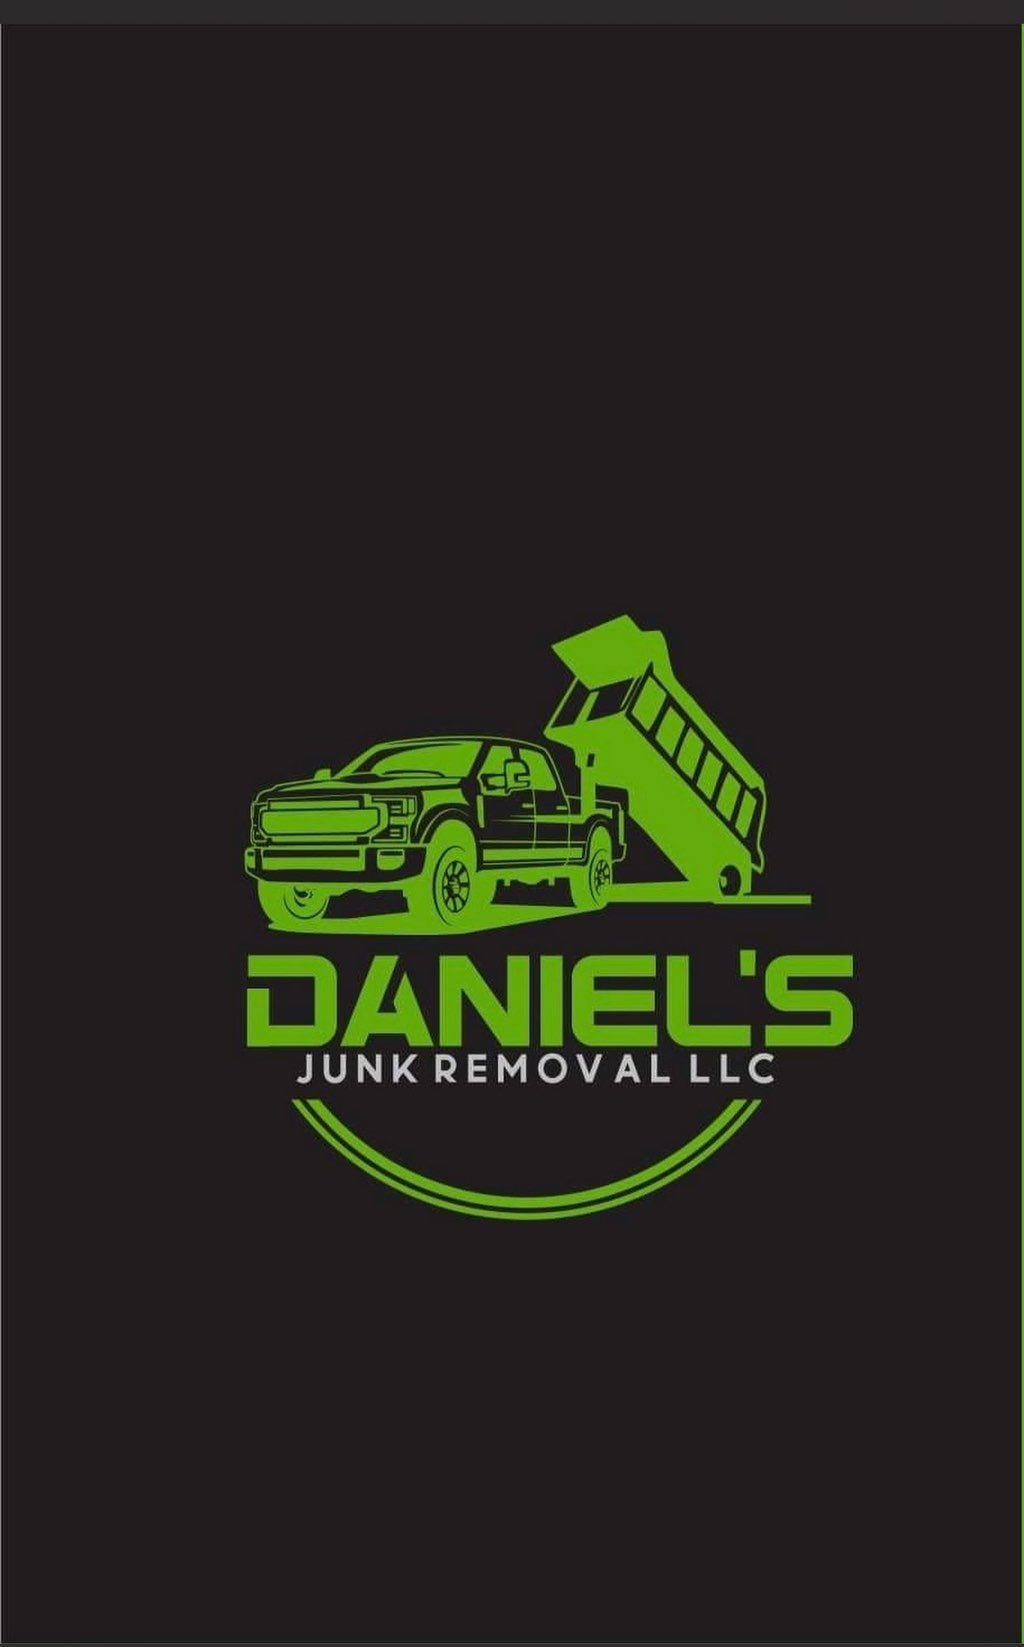 Daniel’s junk removal LLC